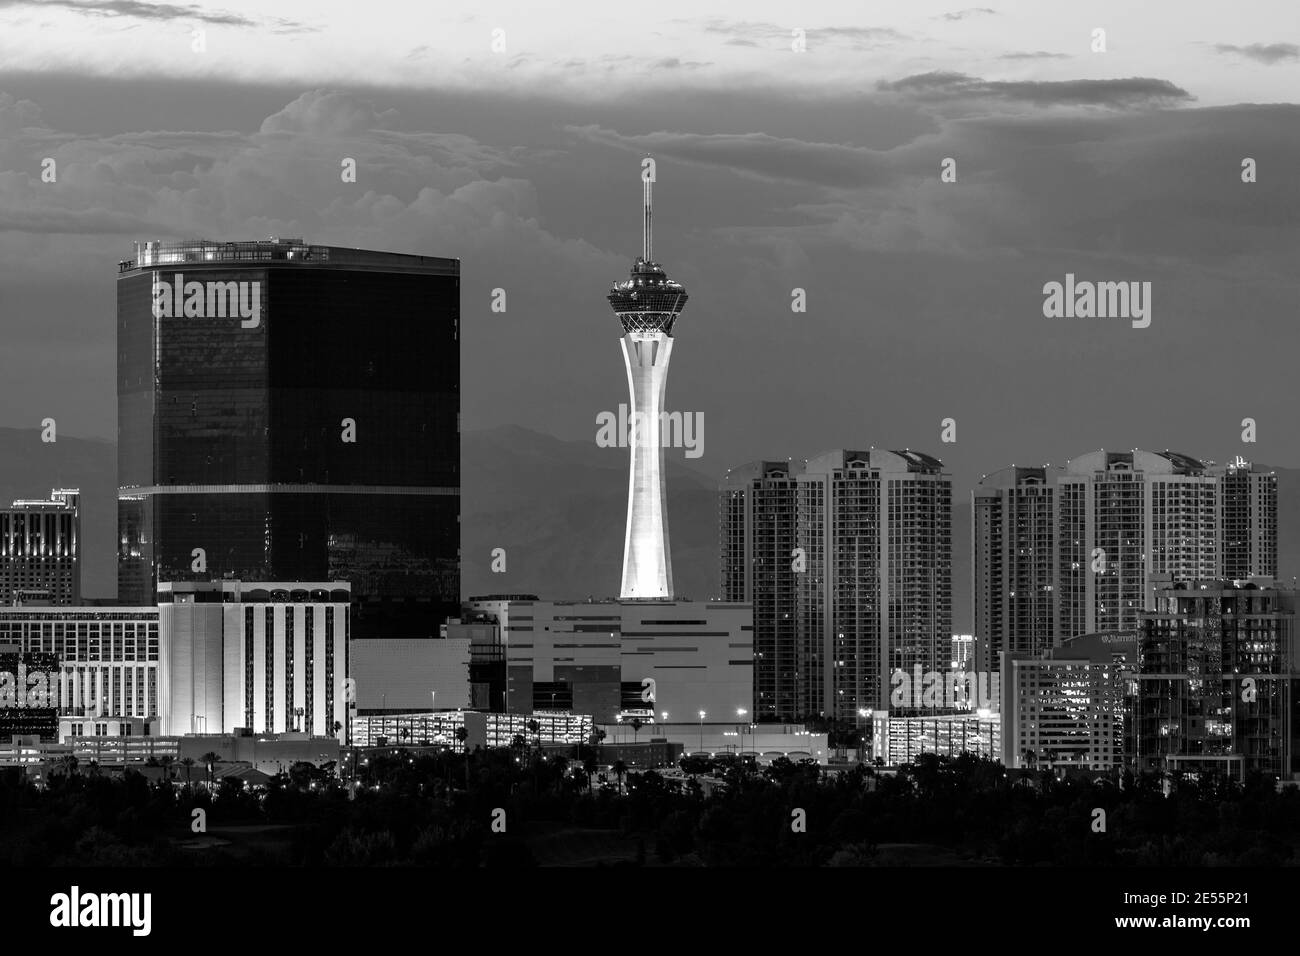 Las Vegas, Nevada, EE.UU. - 10 de junio de 2015: Vista en blanco y negro del cielo tormentoso detrás de las torres Stratosphere y Fontainebleau en el Strip de las Vegas. Foto de stock